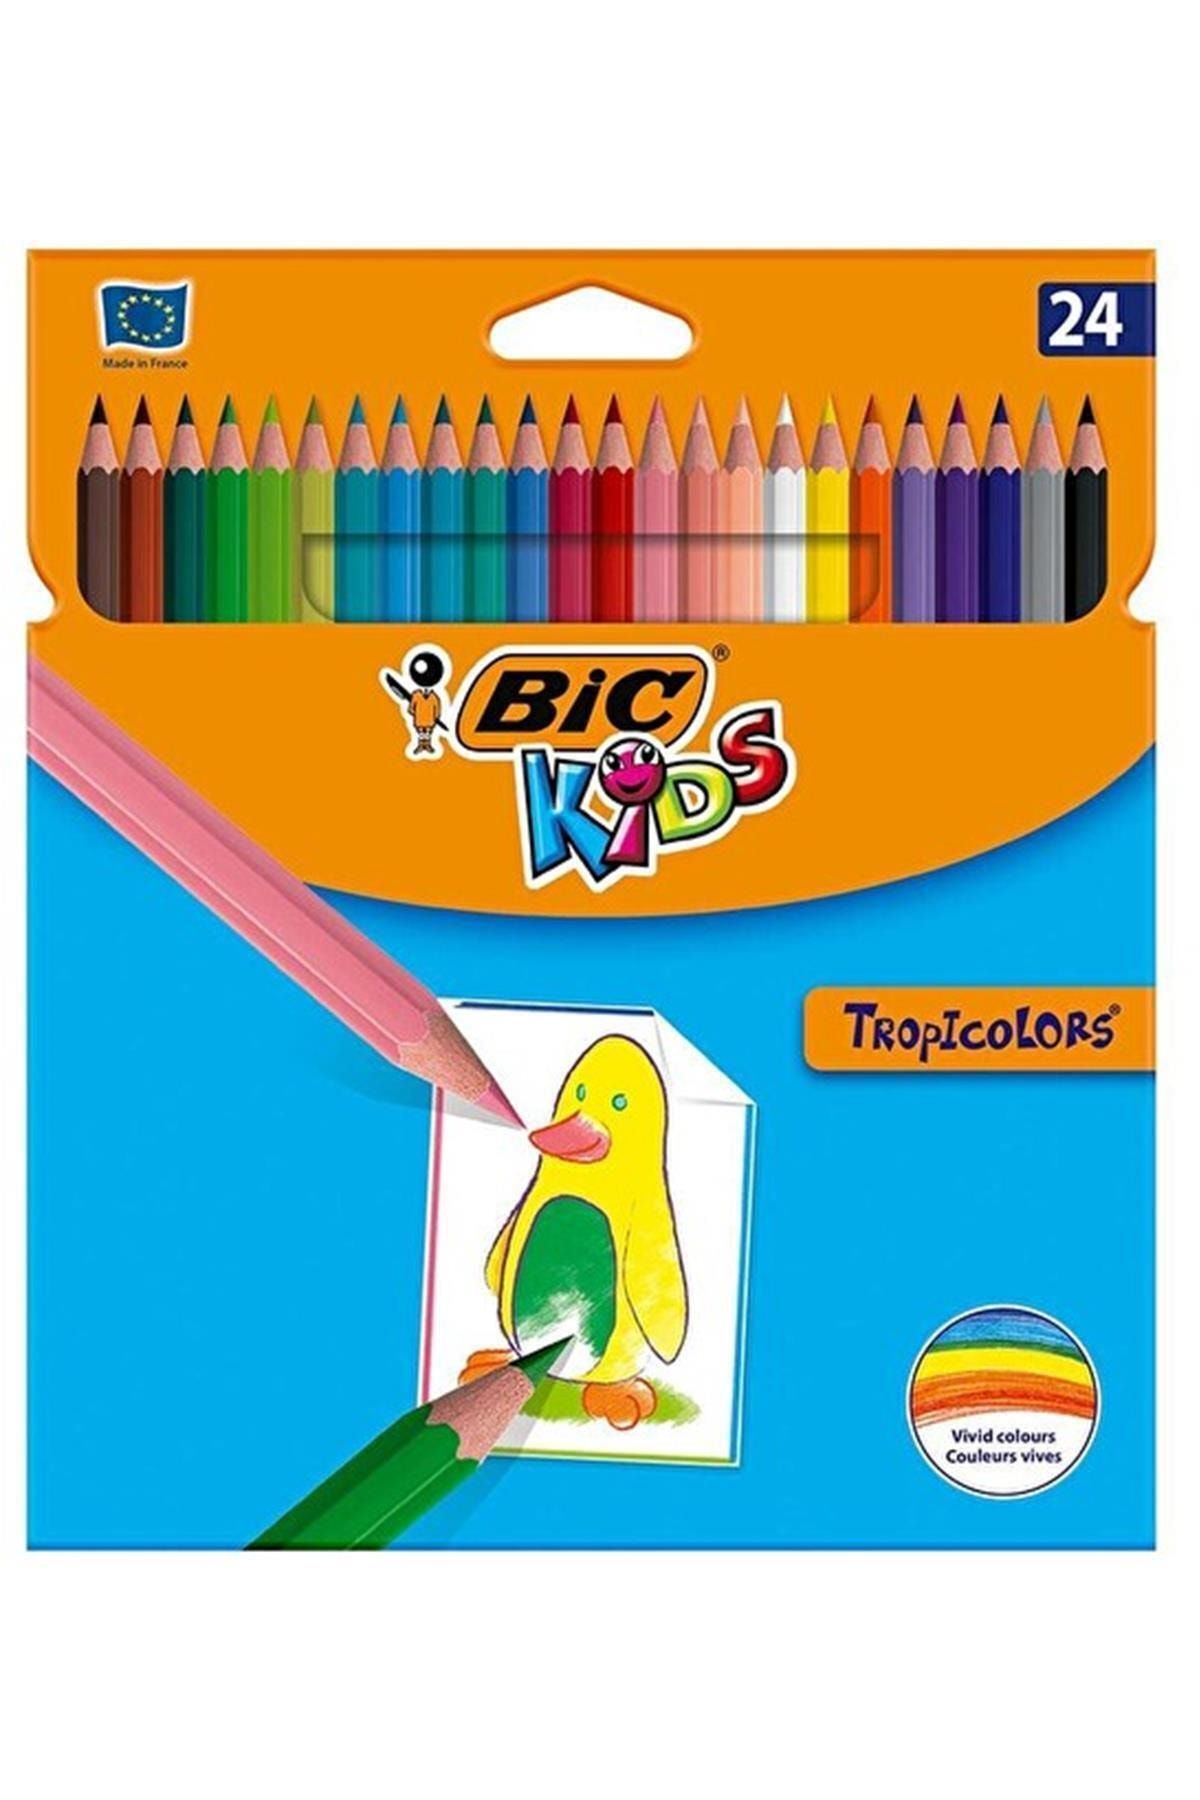 Bic Marka: Bıc Kids Tropicolors Kuru Boya Kalemi Uzun 24 Renk Kategori: Kuru Boya Kalemi